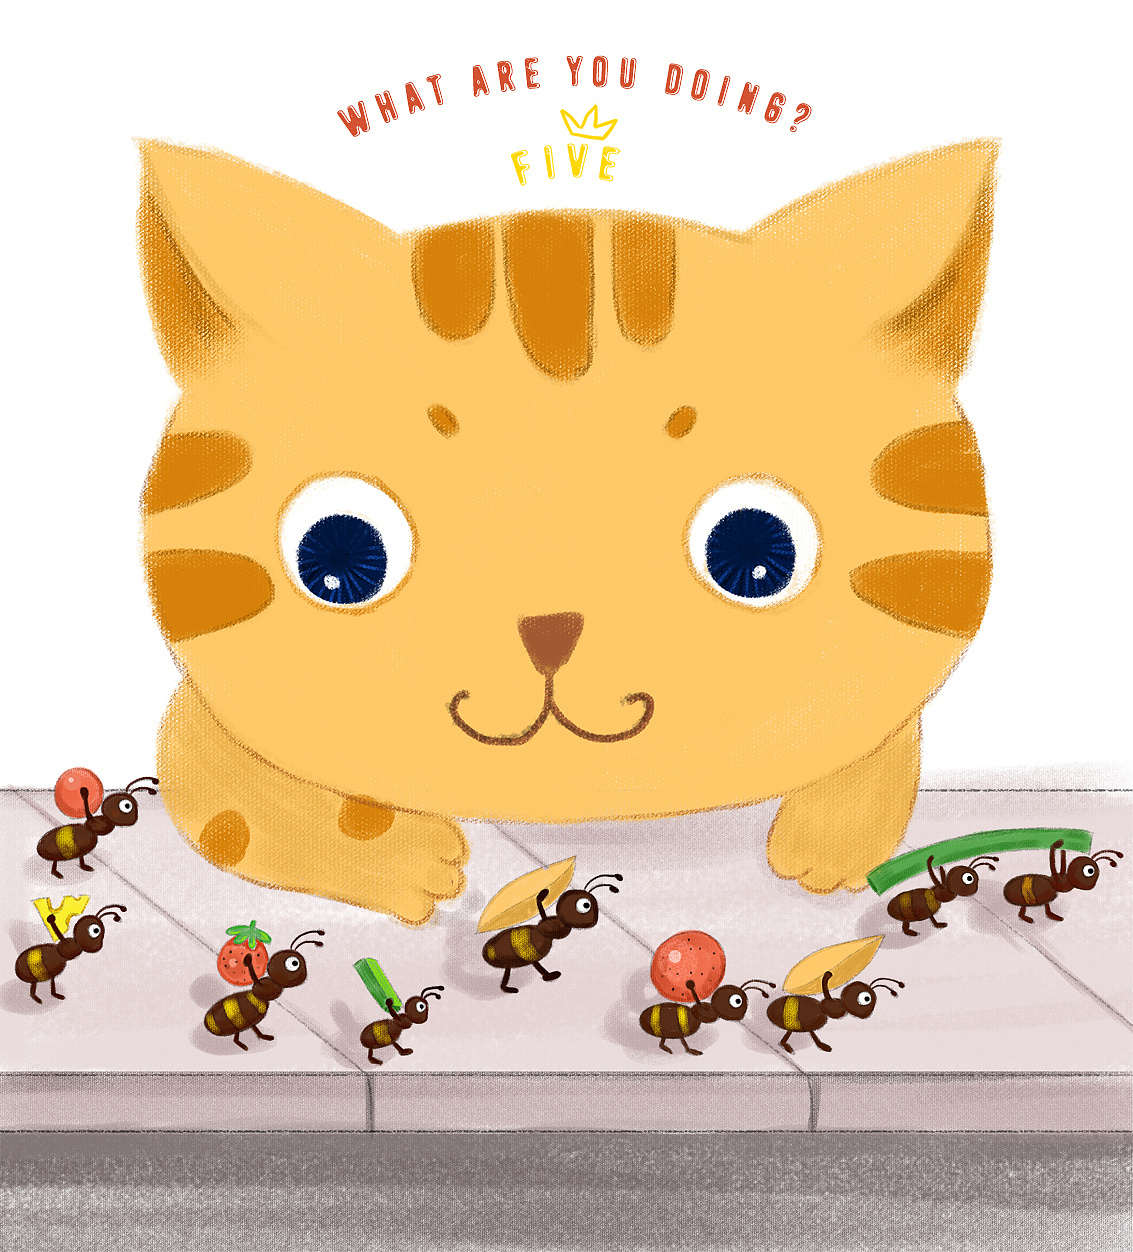 蚂蚁搬食物图片卡通图片